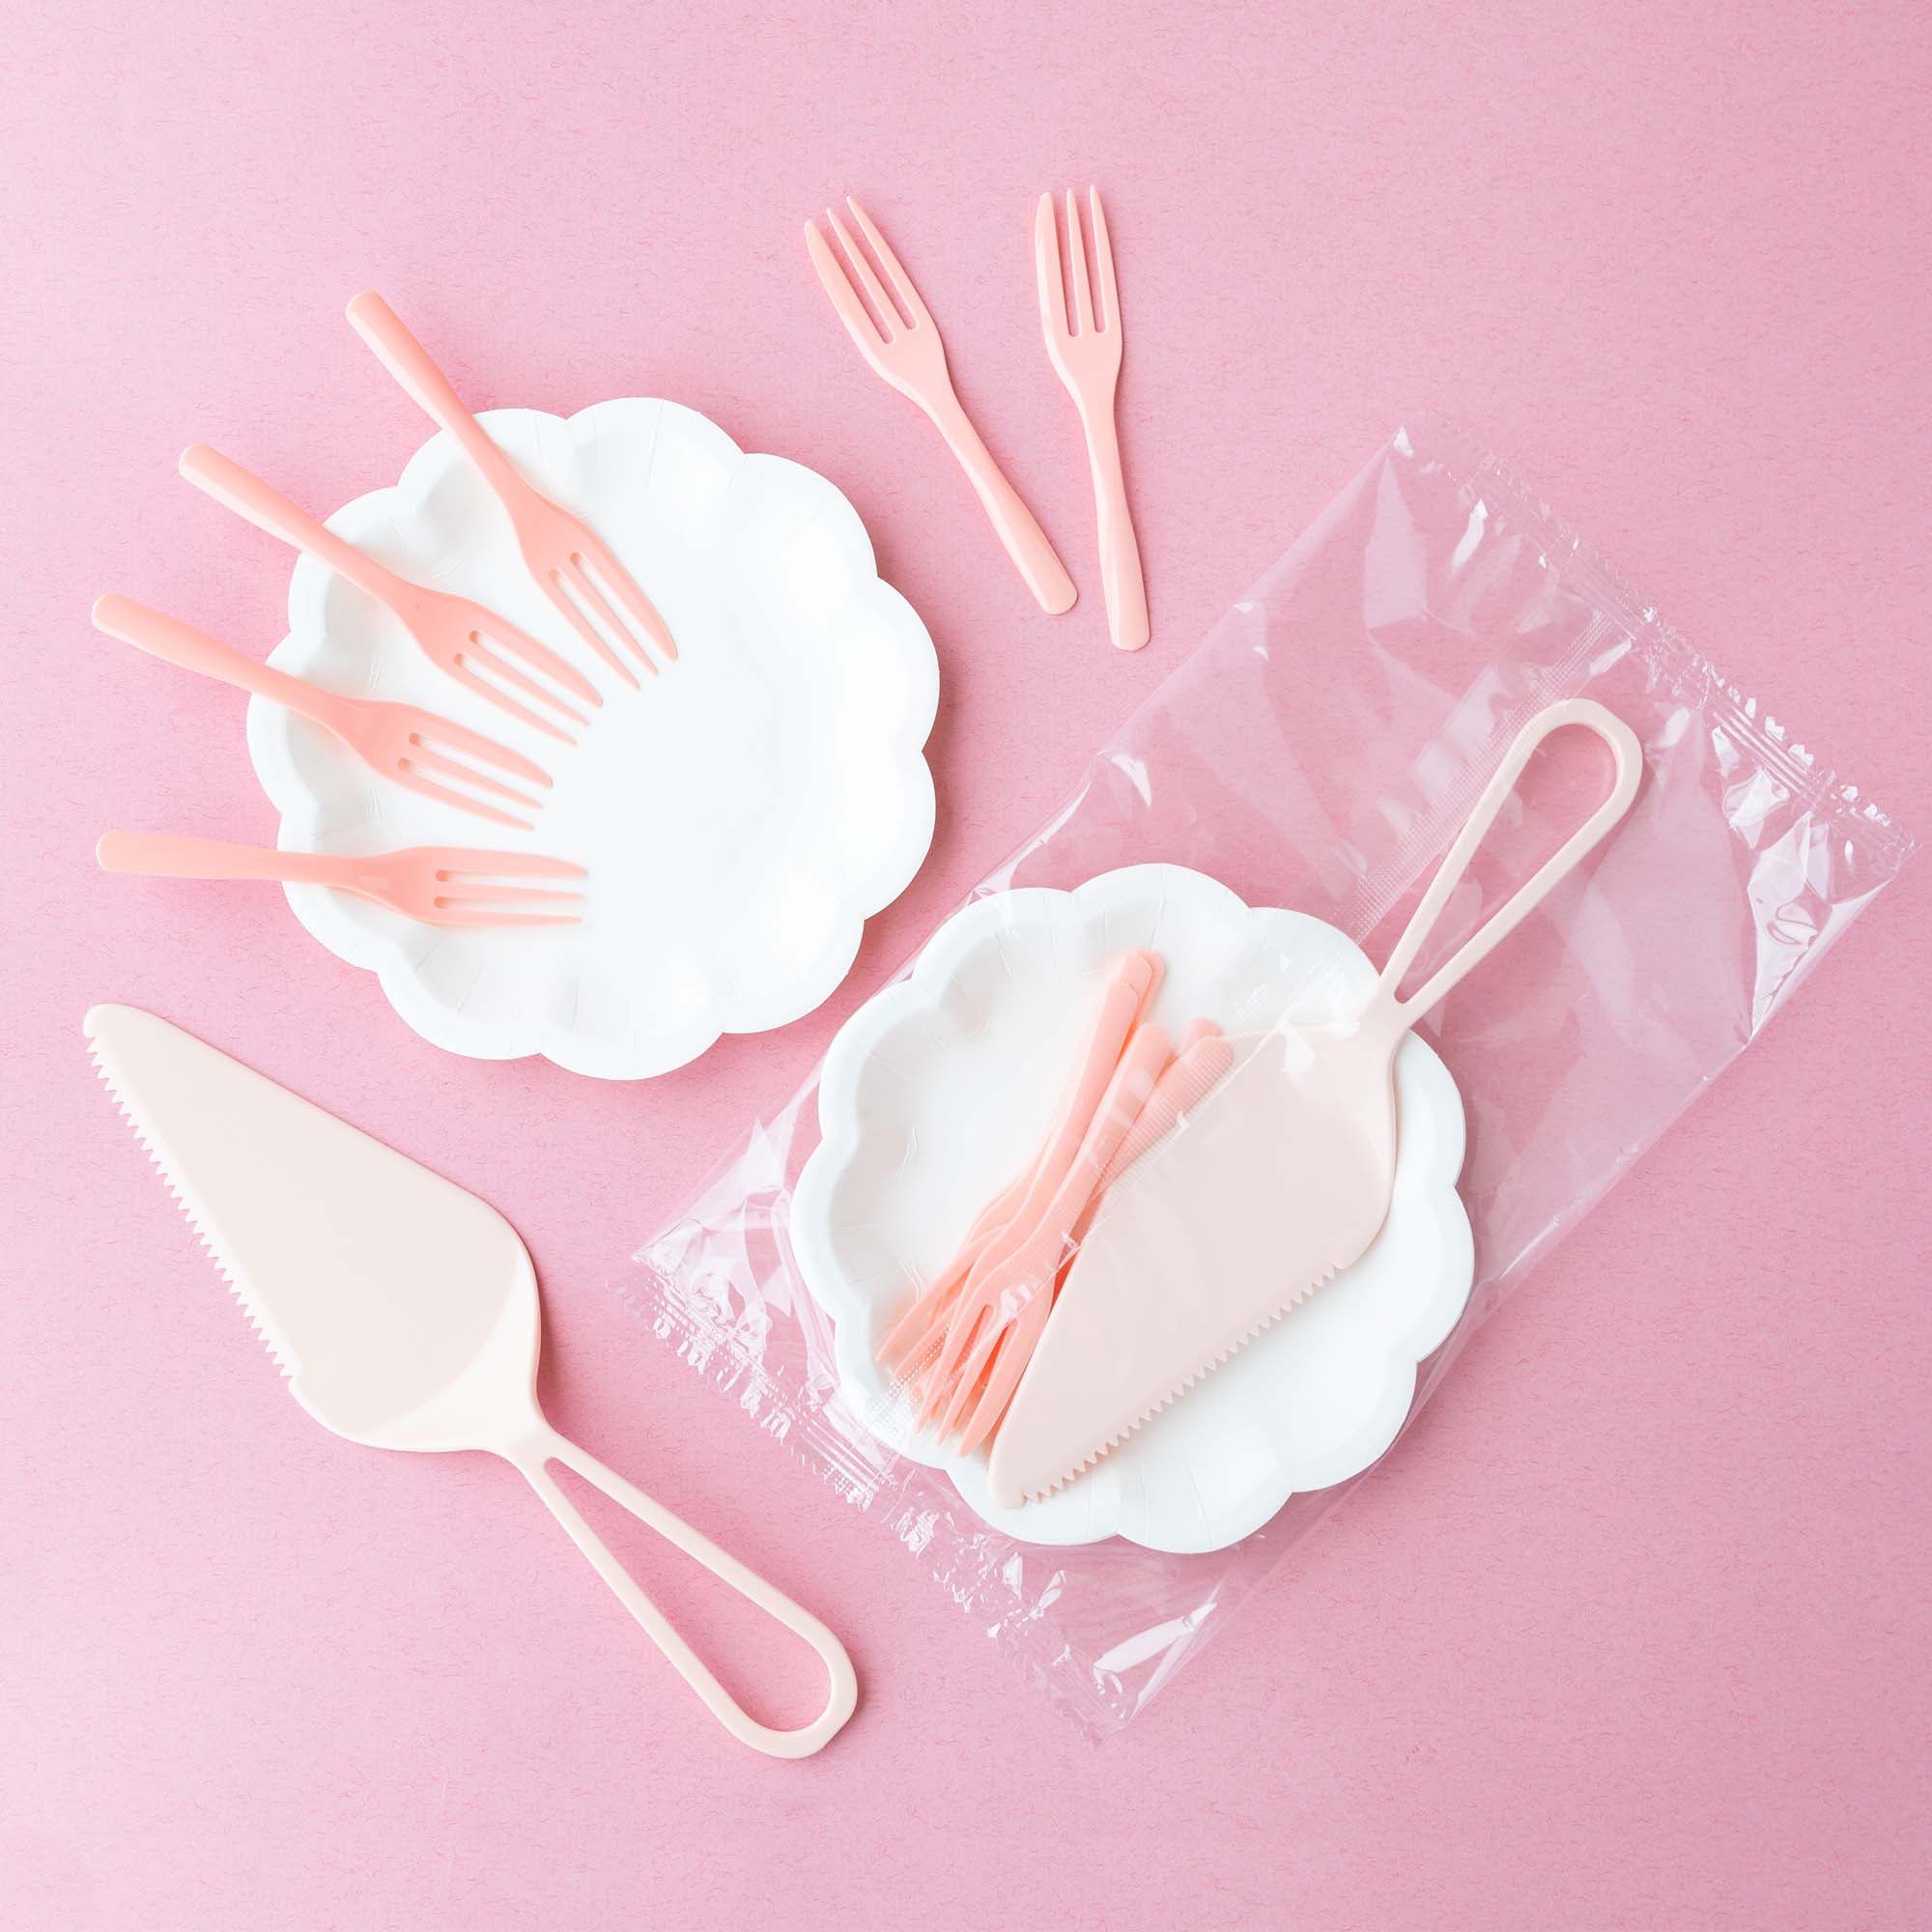 苔曙白色花盤+粉色叉子+粉色蛋糕刀組合包，刀叉盤一包全搞定